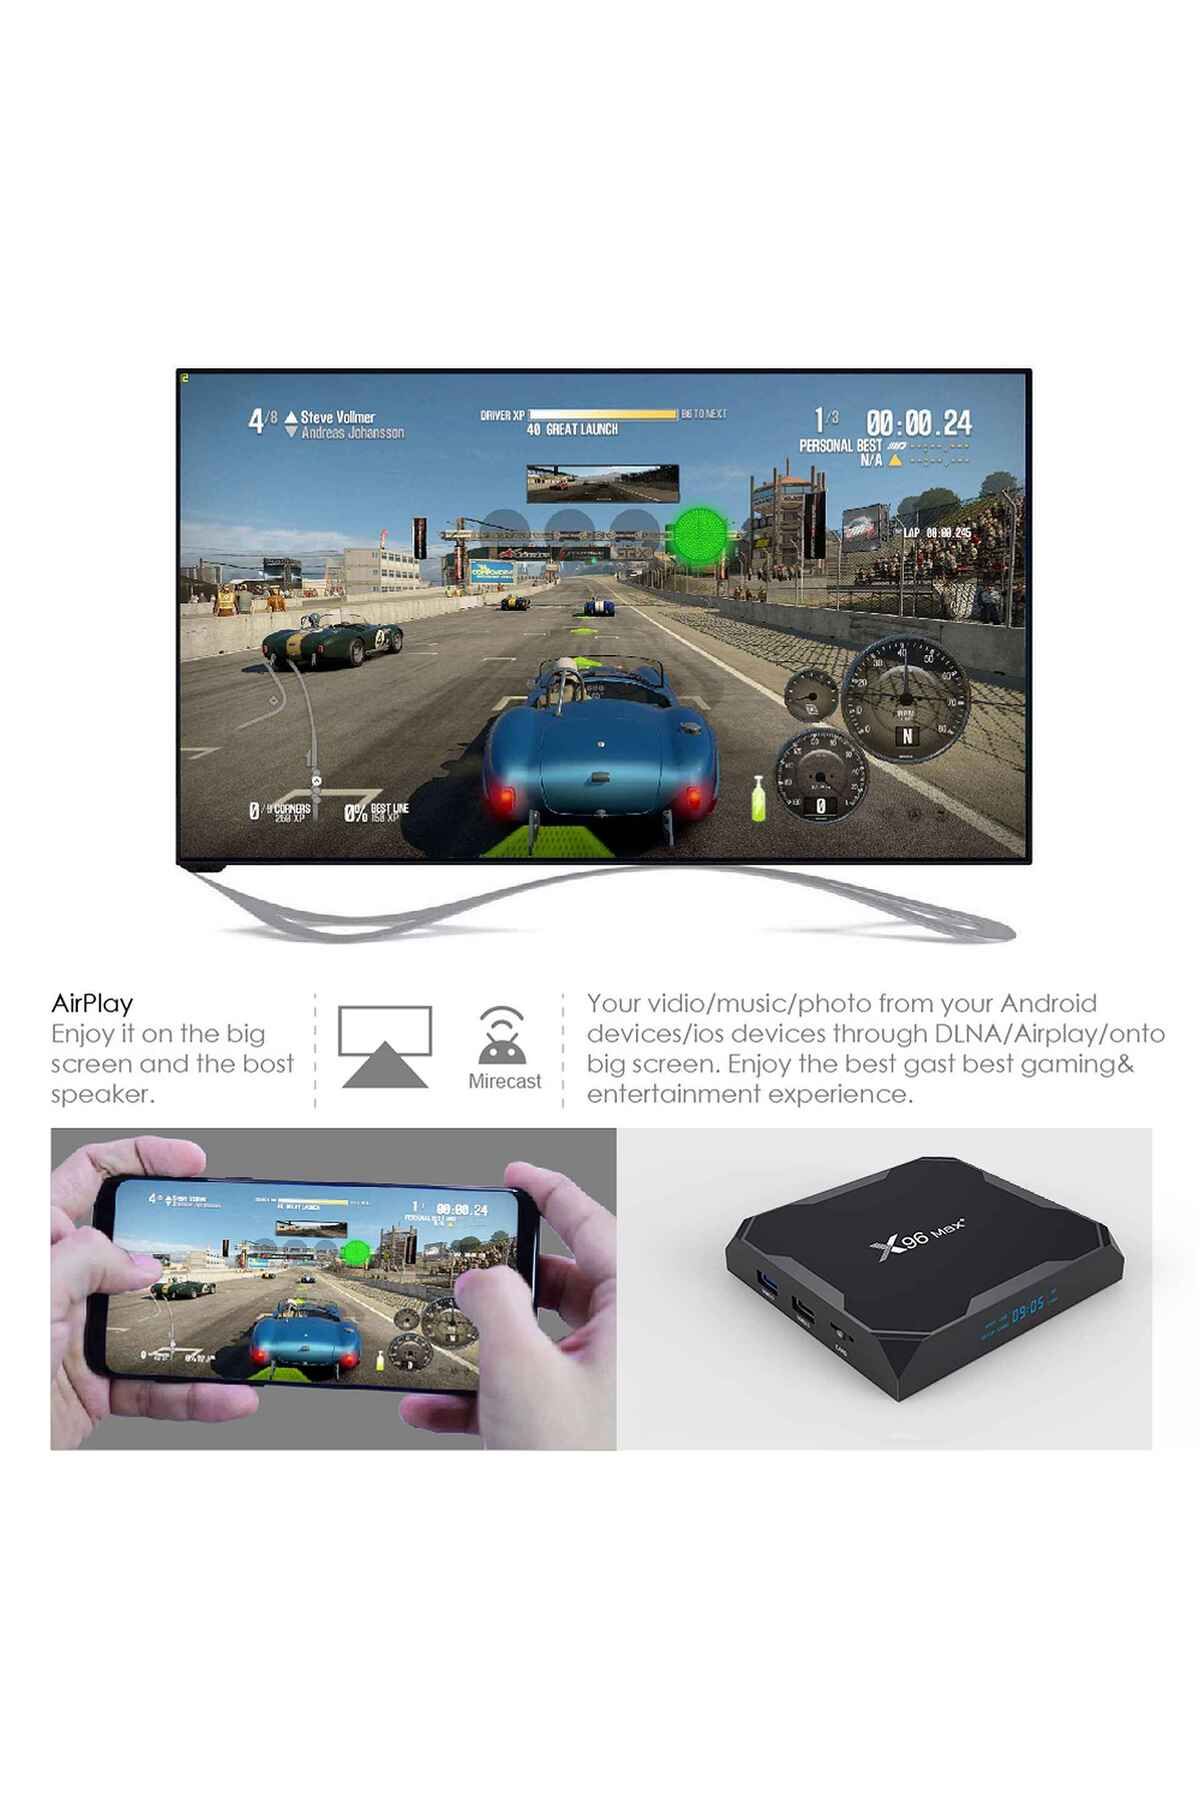 X96 Max + Android 9.0 Tv Box / Medya Oynatıcı 2gb Ram/16gb Rom Amlogic  S905x3 Fiyatı, Yorumları - Trendyol